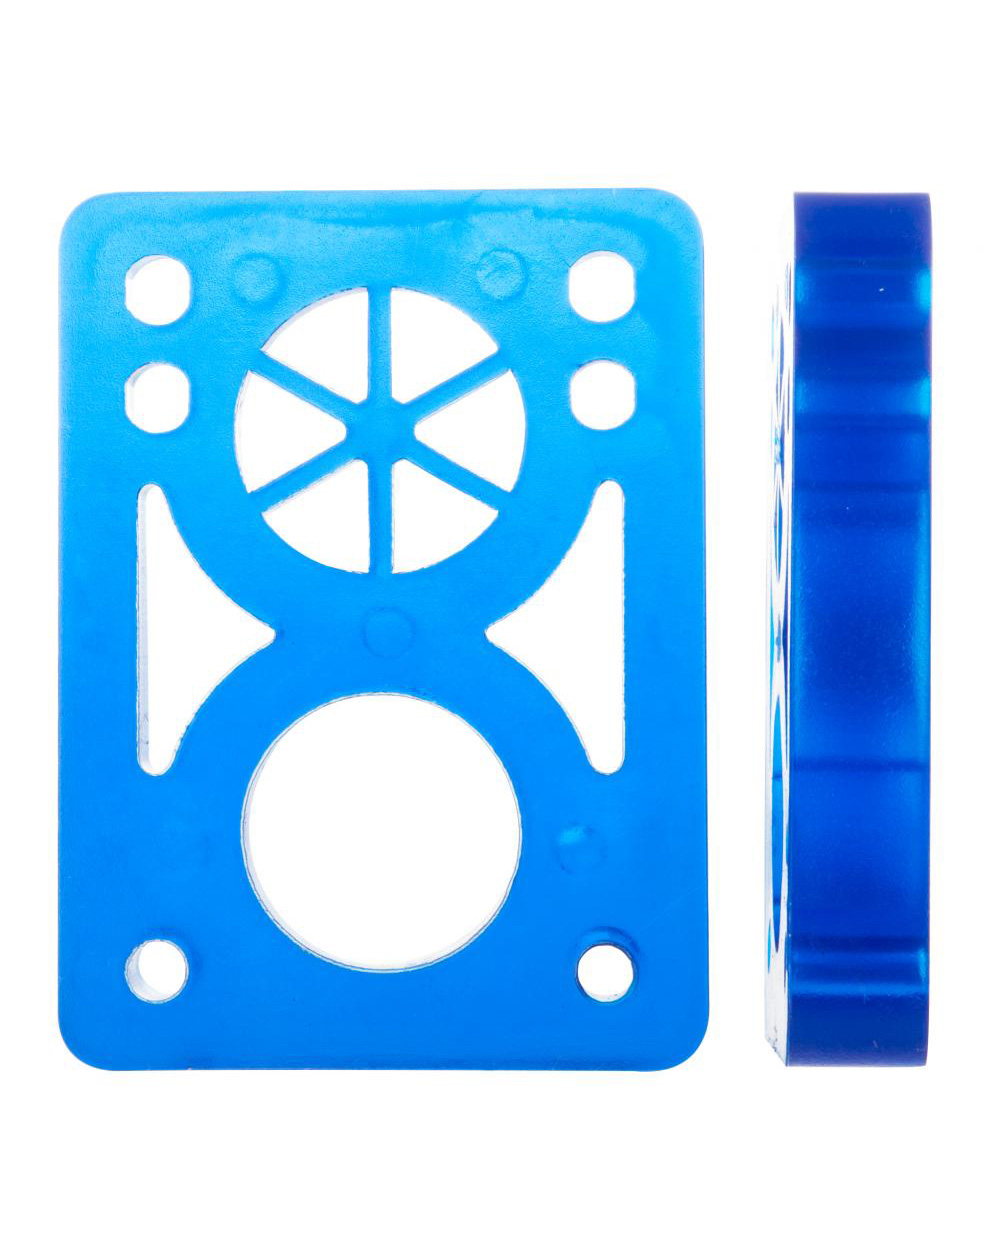 D-Street Pads Skate Soft 1/2-inch Clear Blue 2 peças